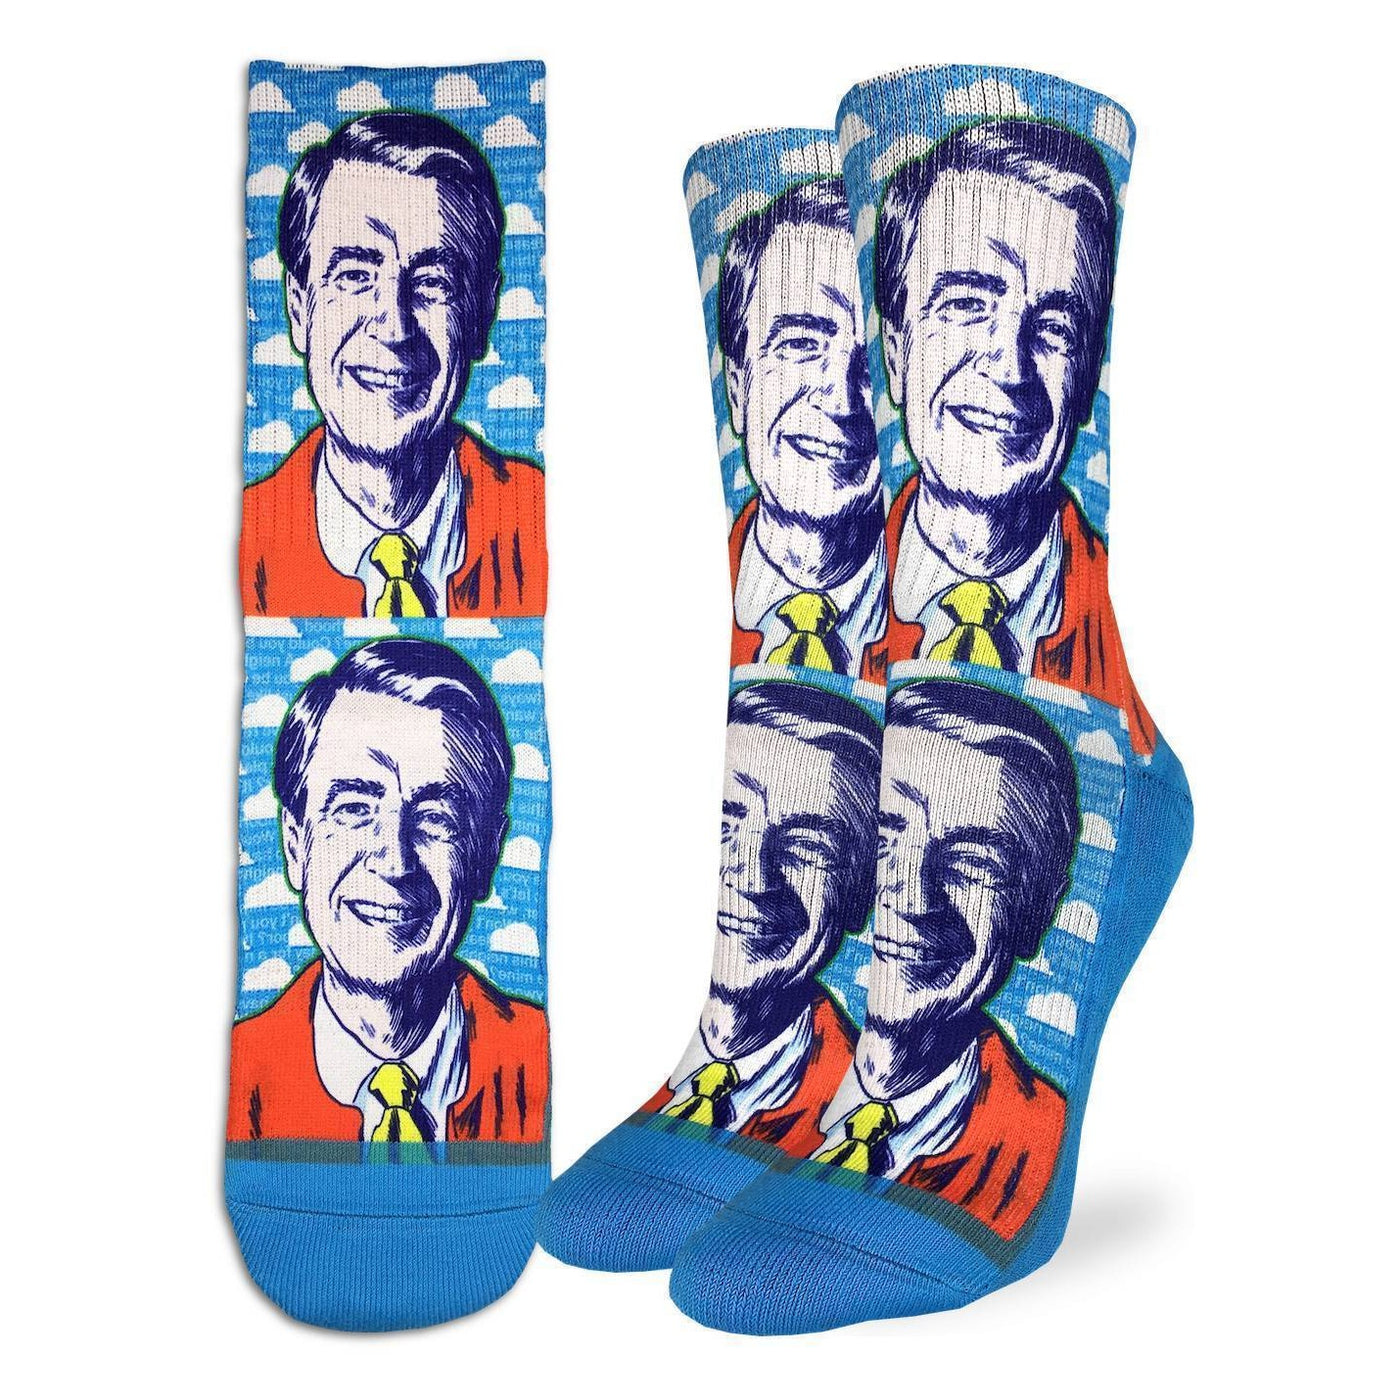 "Mister Rogers Pop Art" Crew Socks by Good Luck Sock